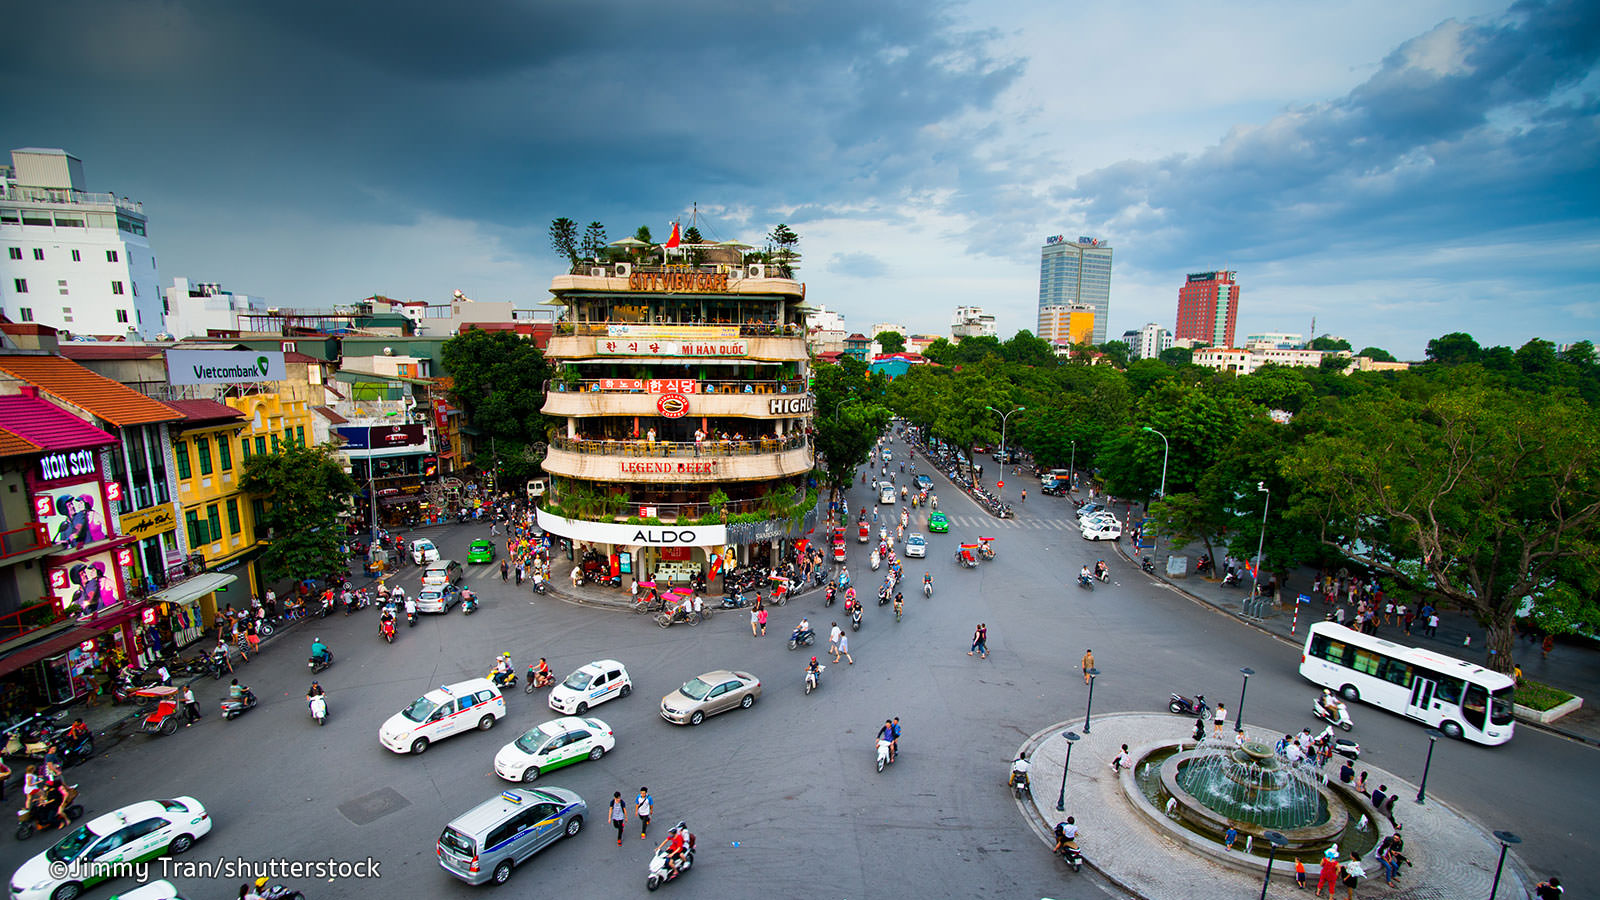 Hanoi Tours & Travel Information - Vietnam - Asia Tours